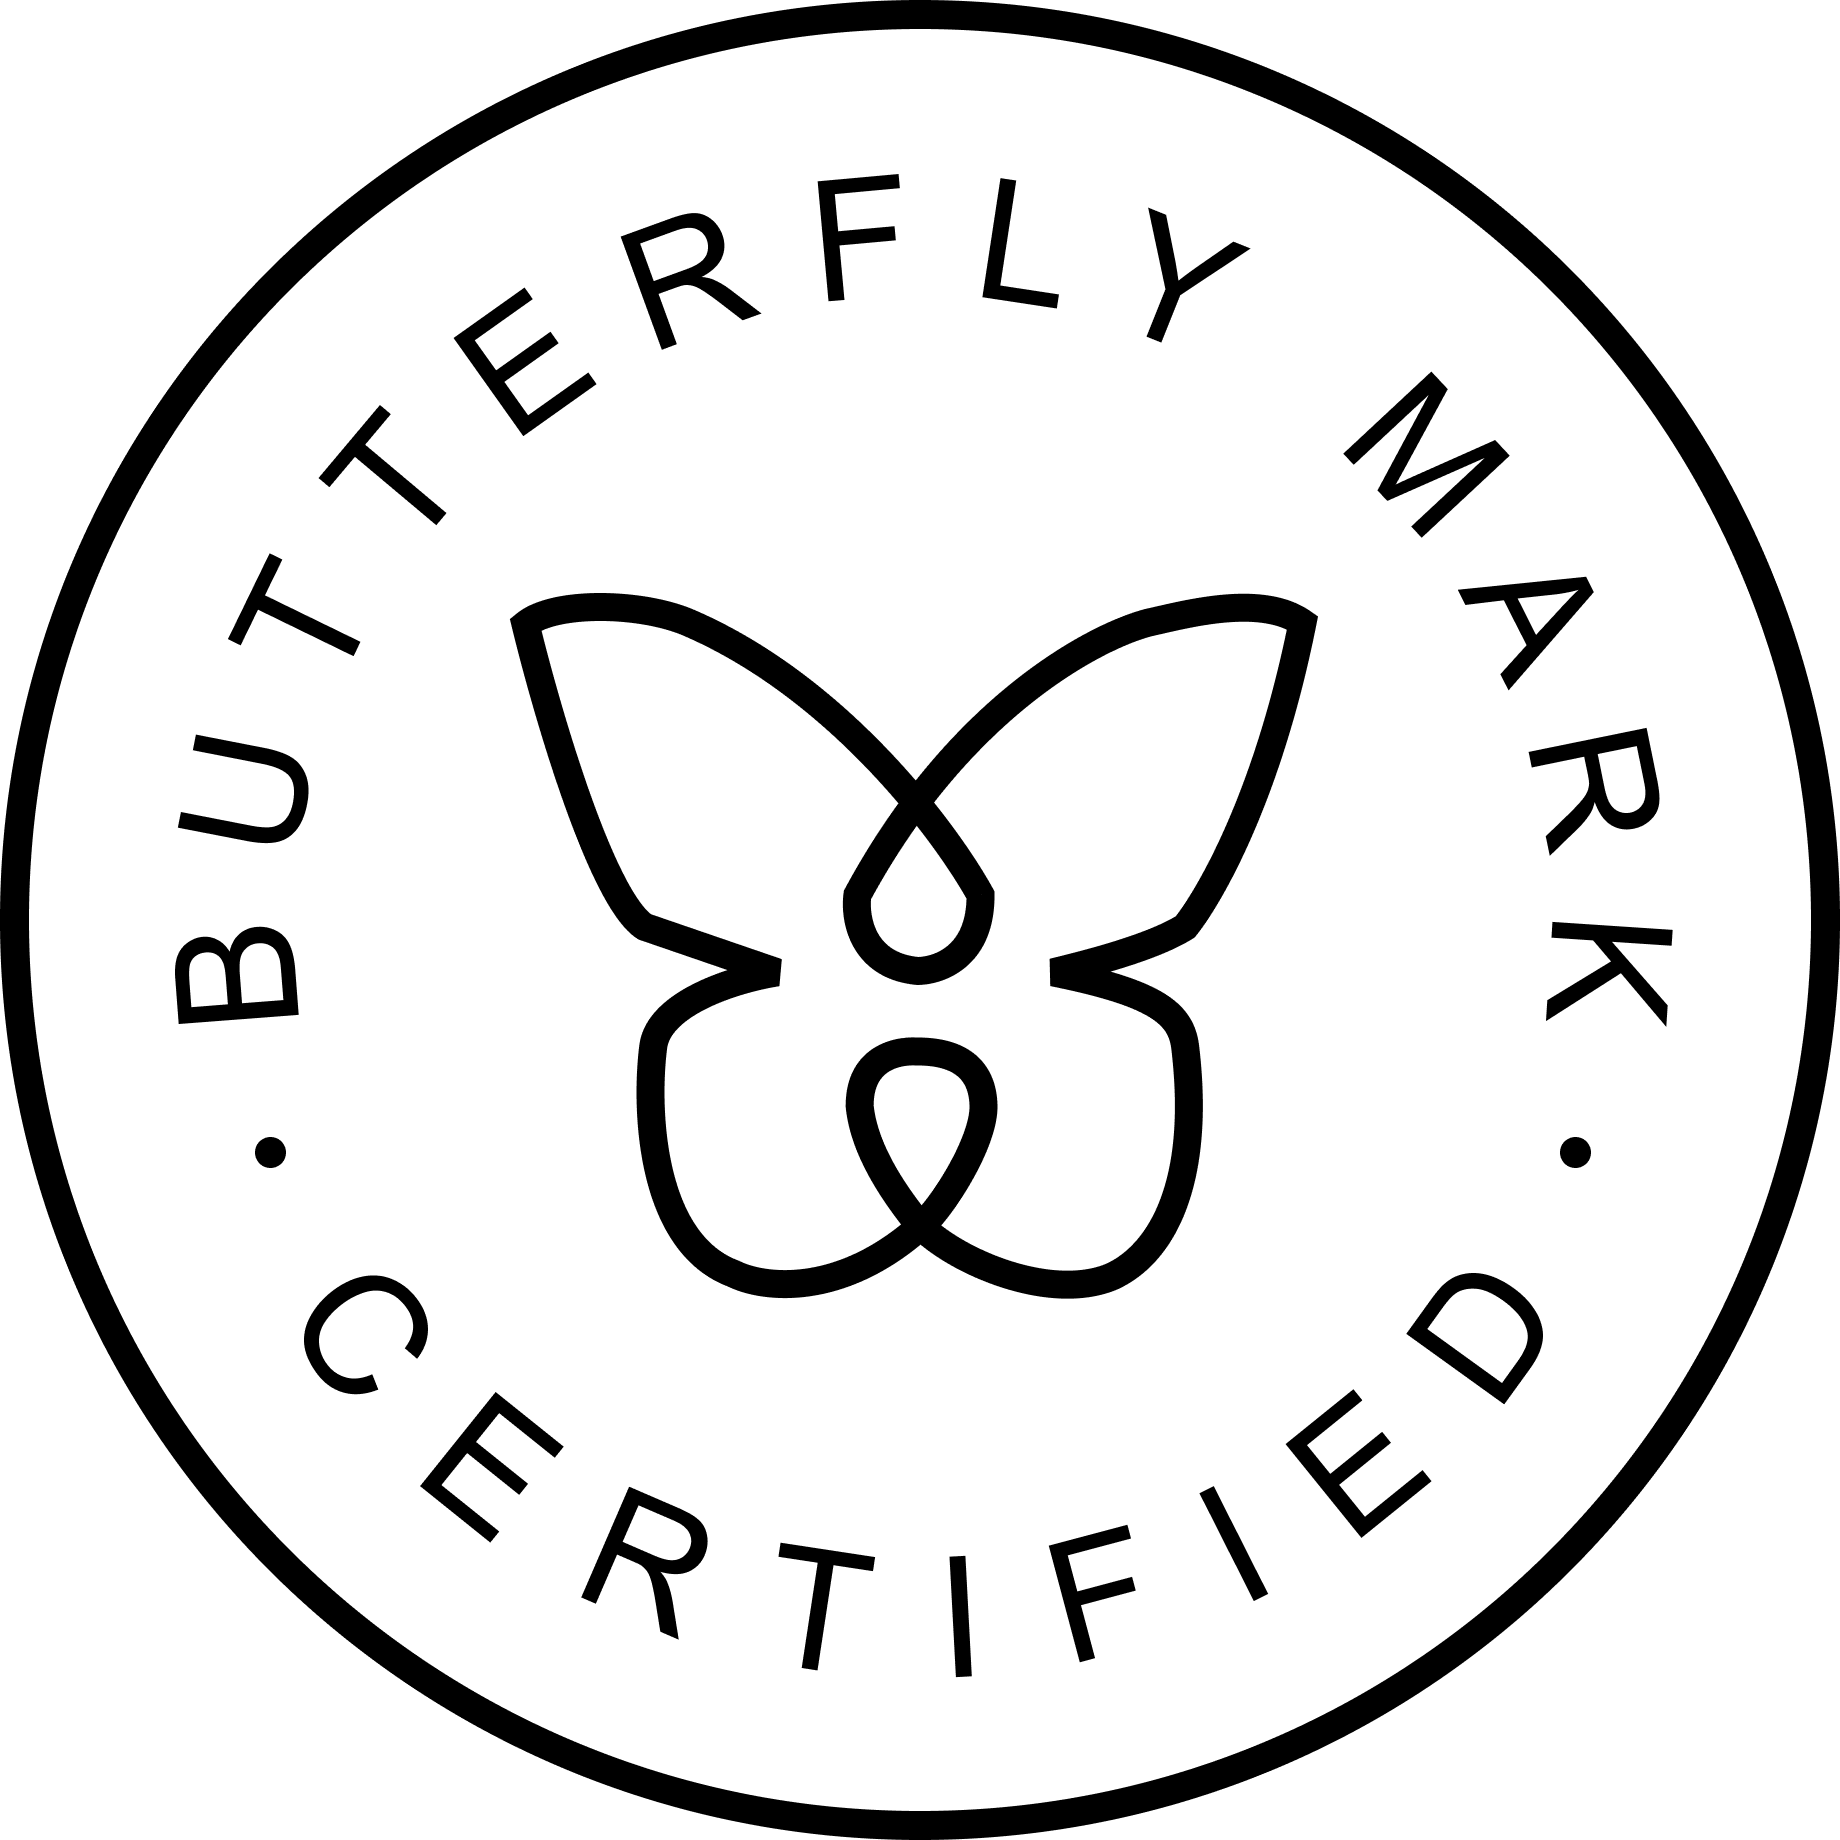 Butterfly Mark certification